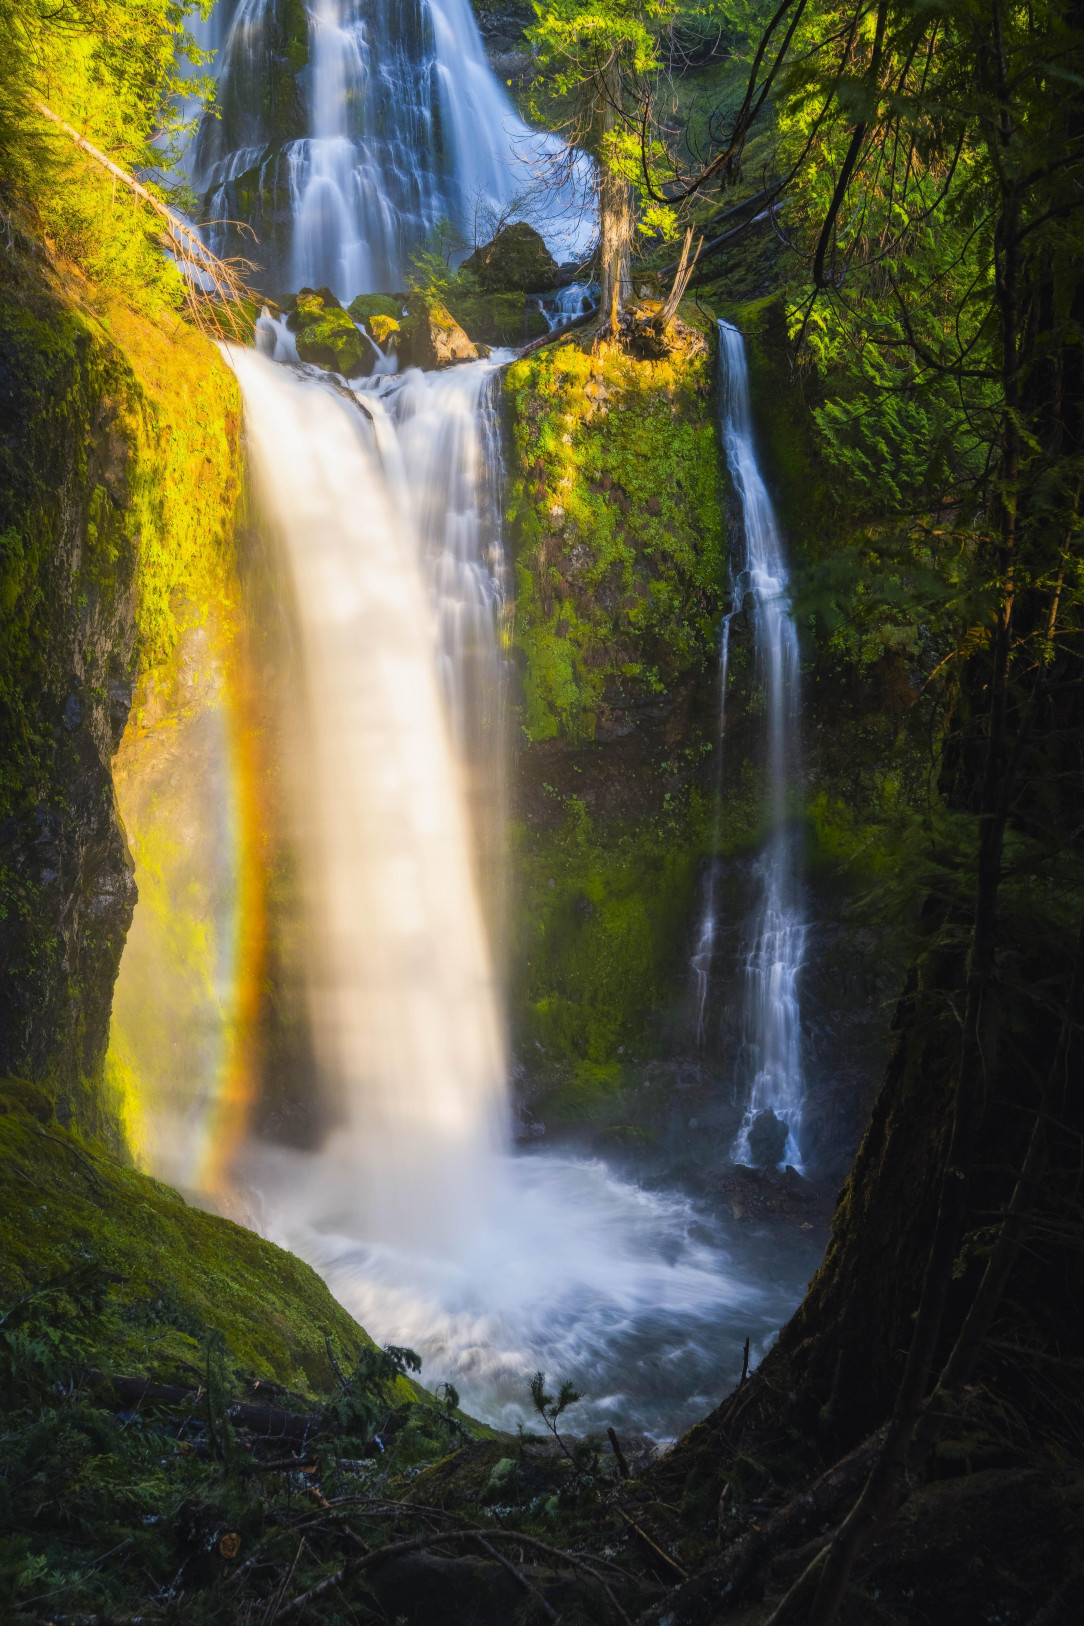 Ethereal waterfalls